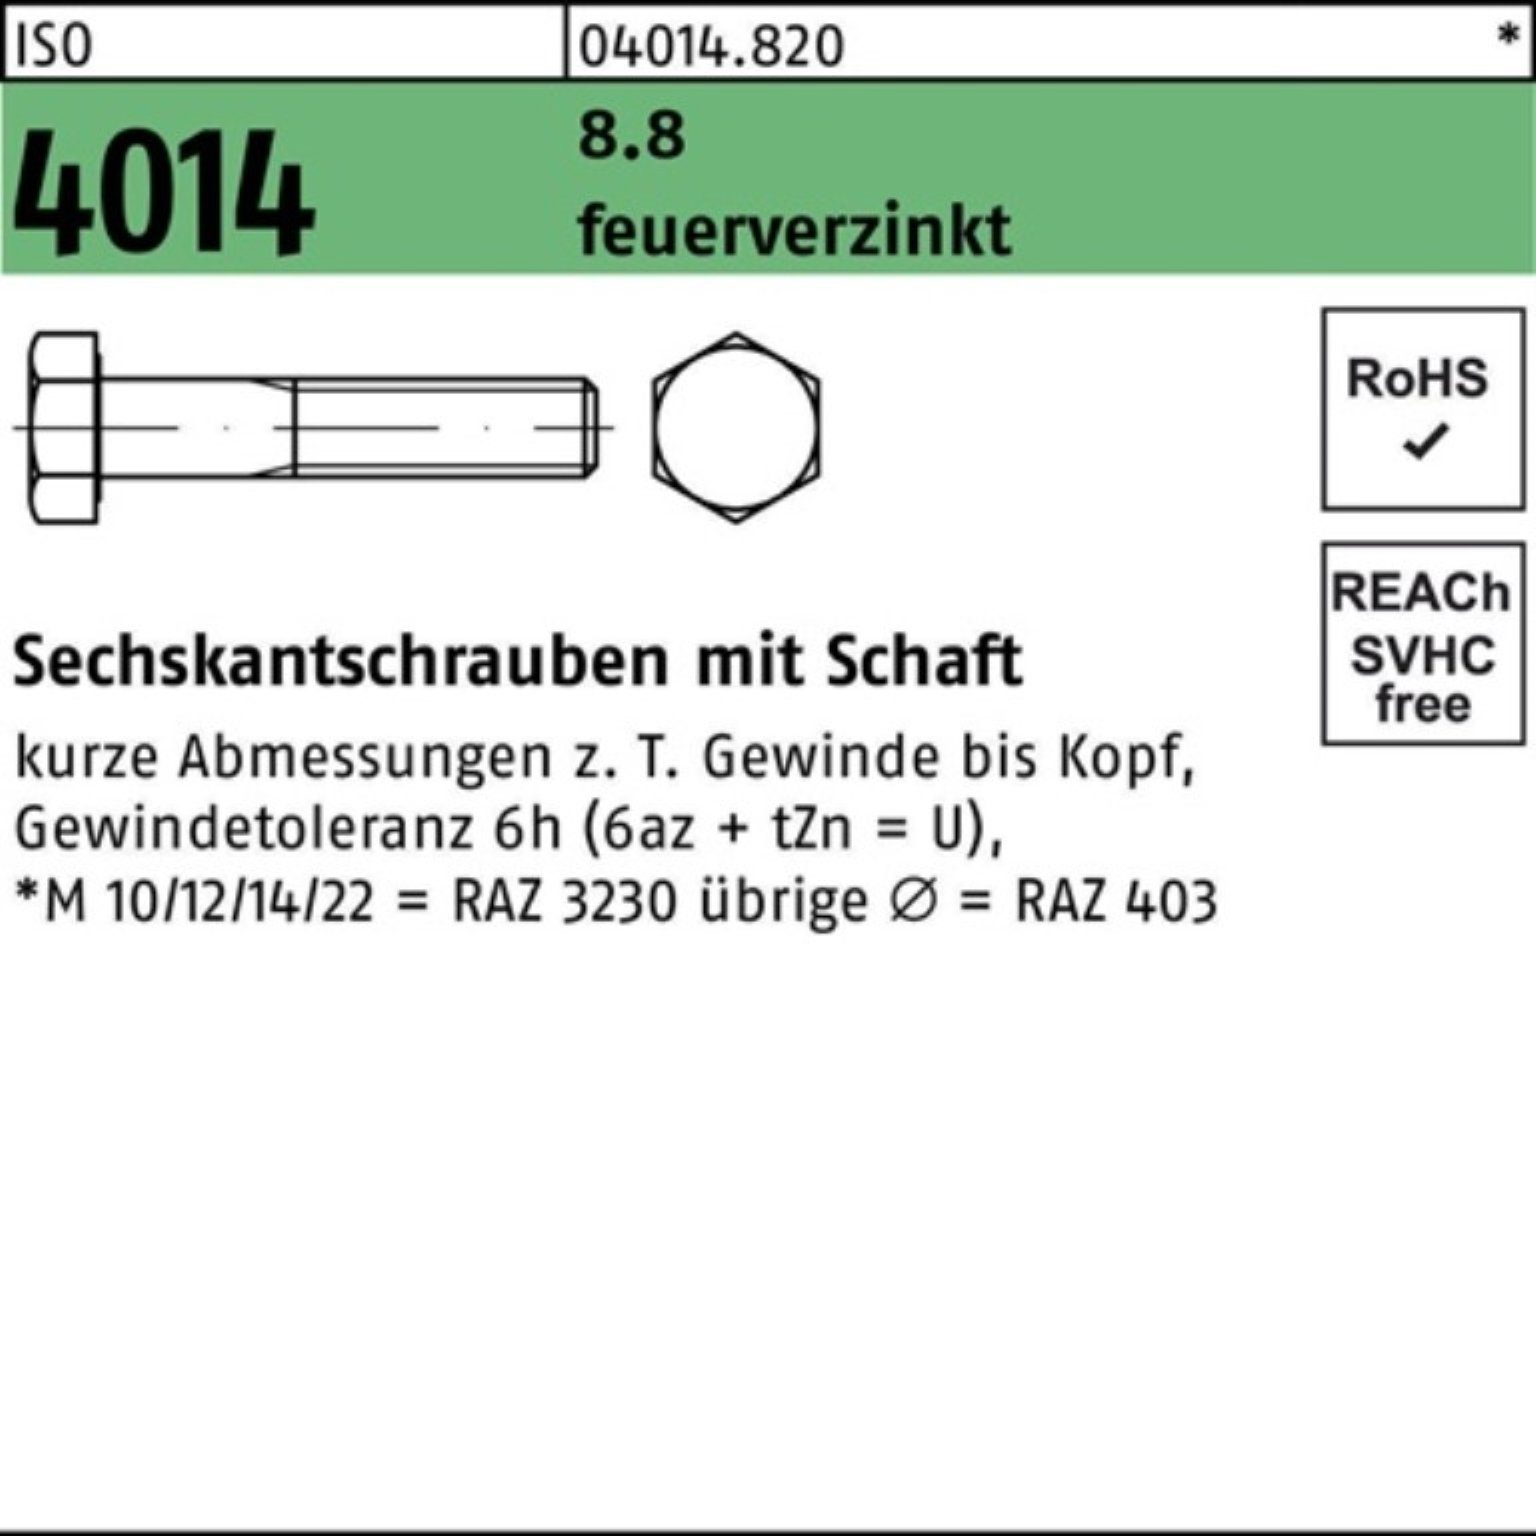 Bufab Sechskantschraube 140 ISO 100er 8.8 M16x 2 feuerverz. Schaft 4014 Sechskantschraube Pack